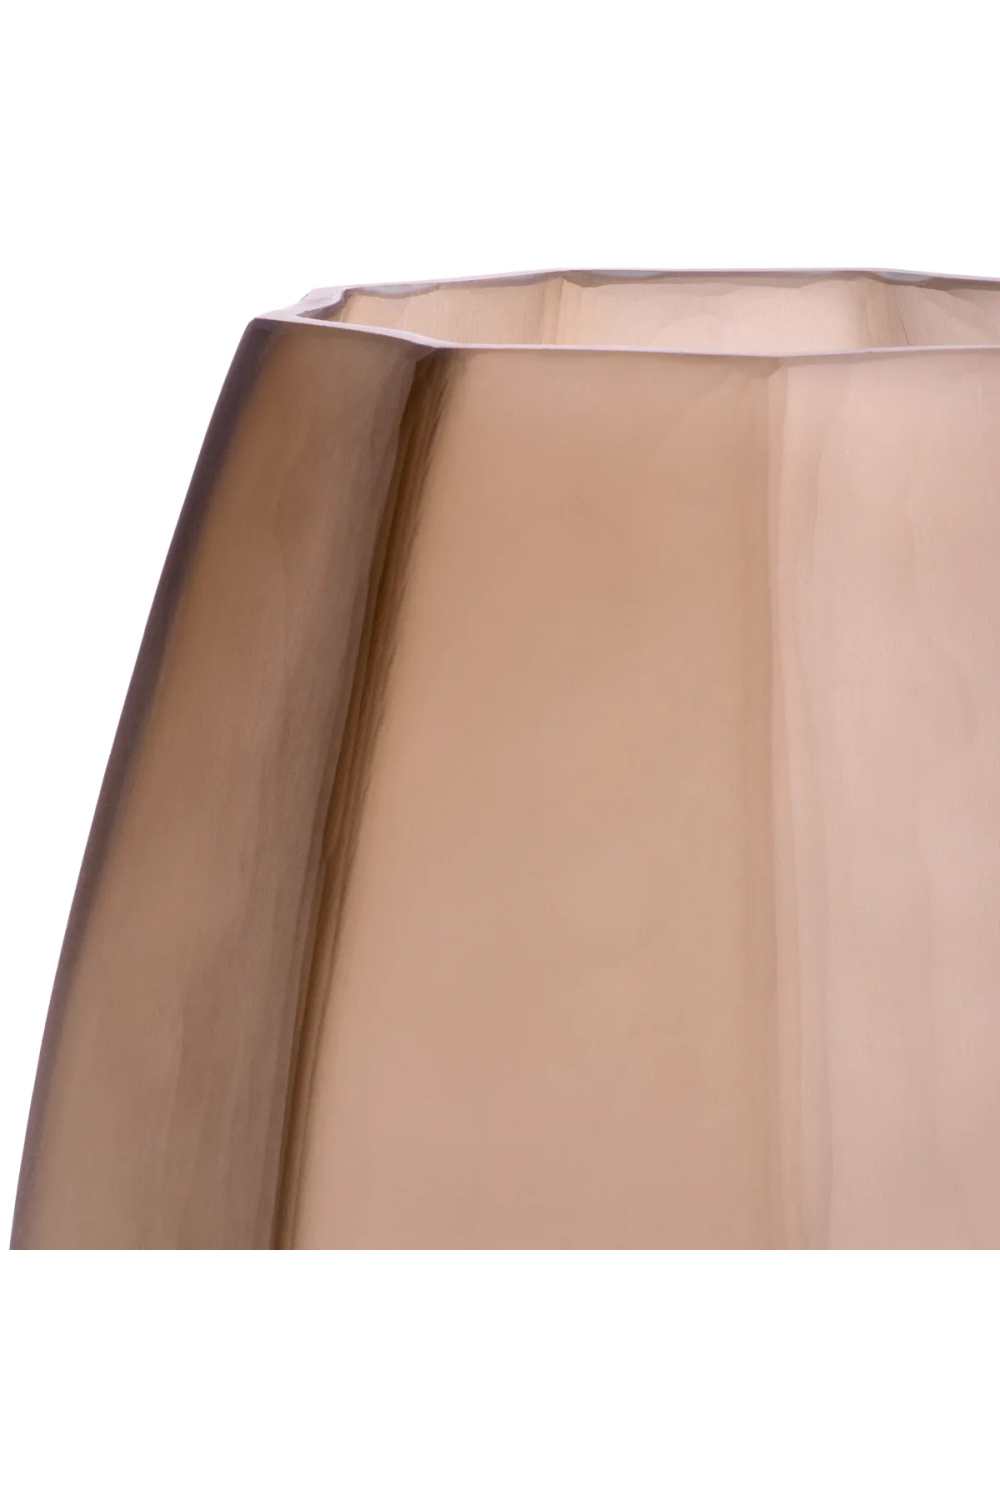 Narrow Glass Vase S | Eichholtz Tiara | Oroa.com